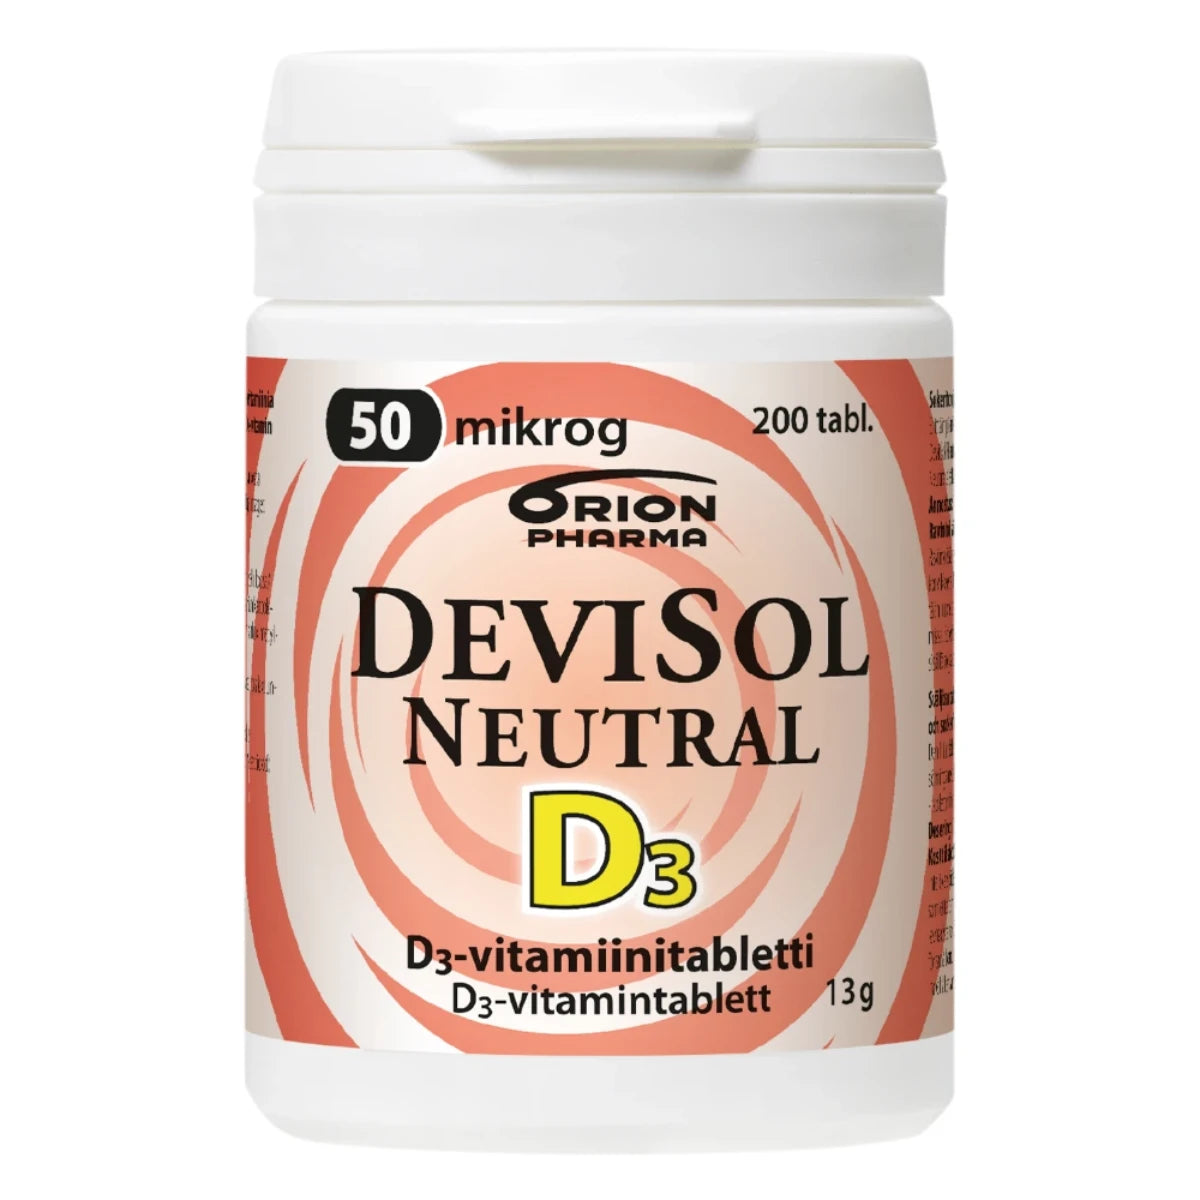 DEVISOL Neutral 50 mikrog tabletti 200 kpl on erittäin pienikokoinen, nieltävä D-vitamiinitabletti.